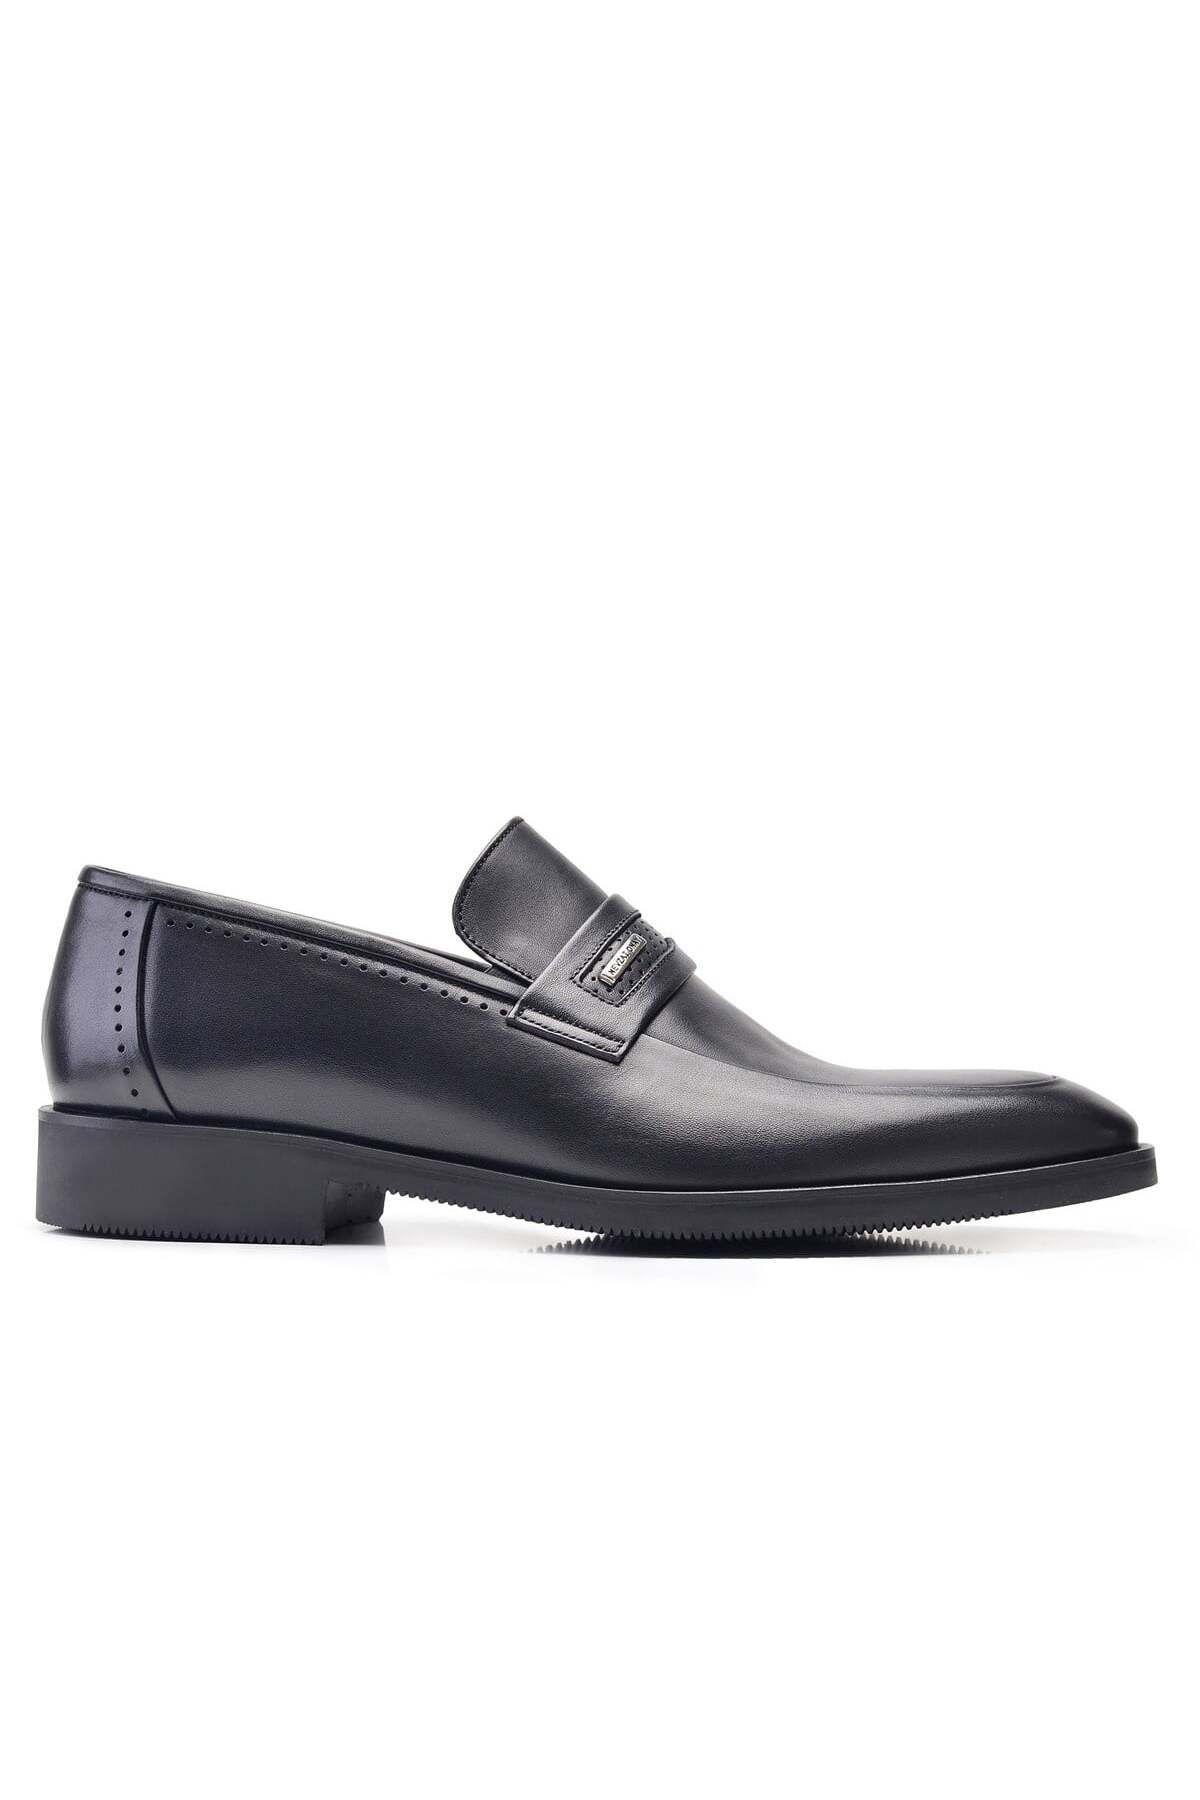 Nevzat Onay Siyah Günlük Loafer Erkek Ayakkabı -8115-